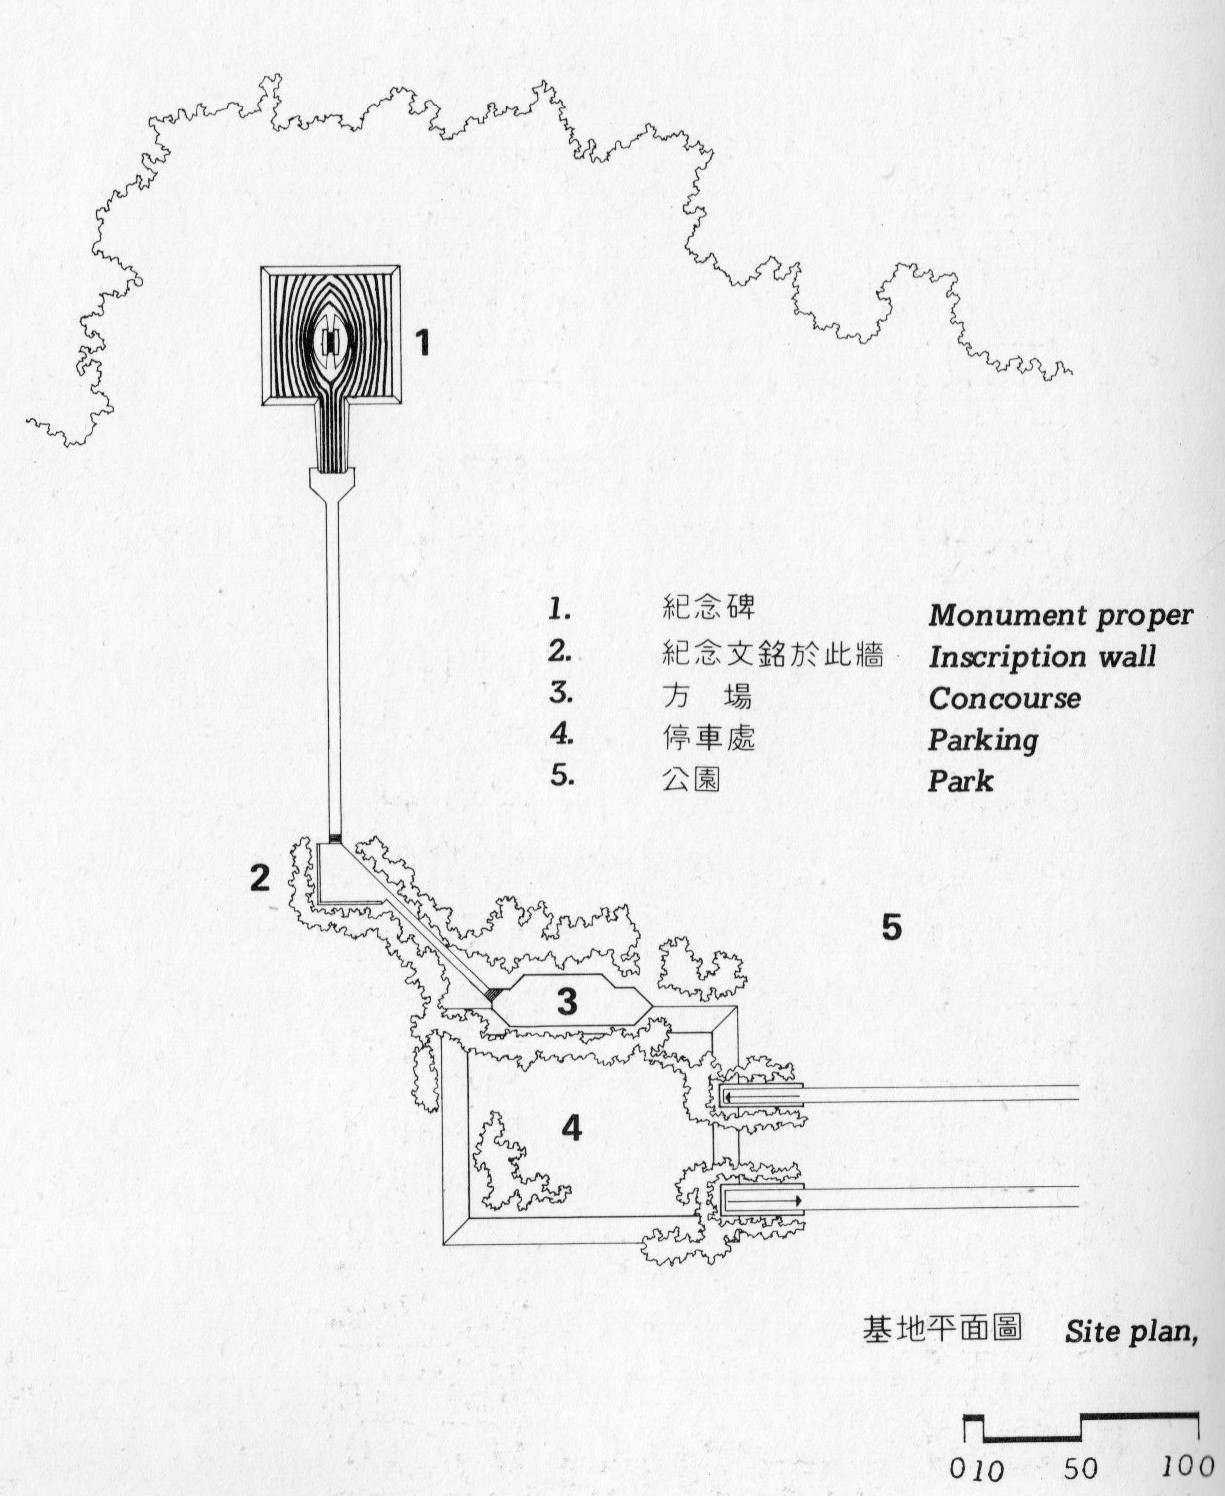 登月紀念碑， 配置圖， 出自《中國當代建築師王大閎》，1978，頁50-圖片